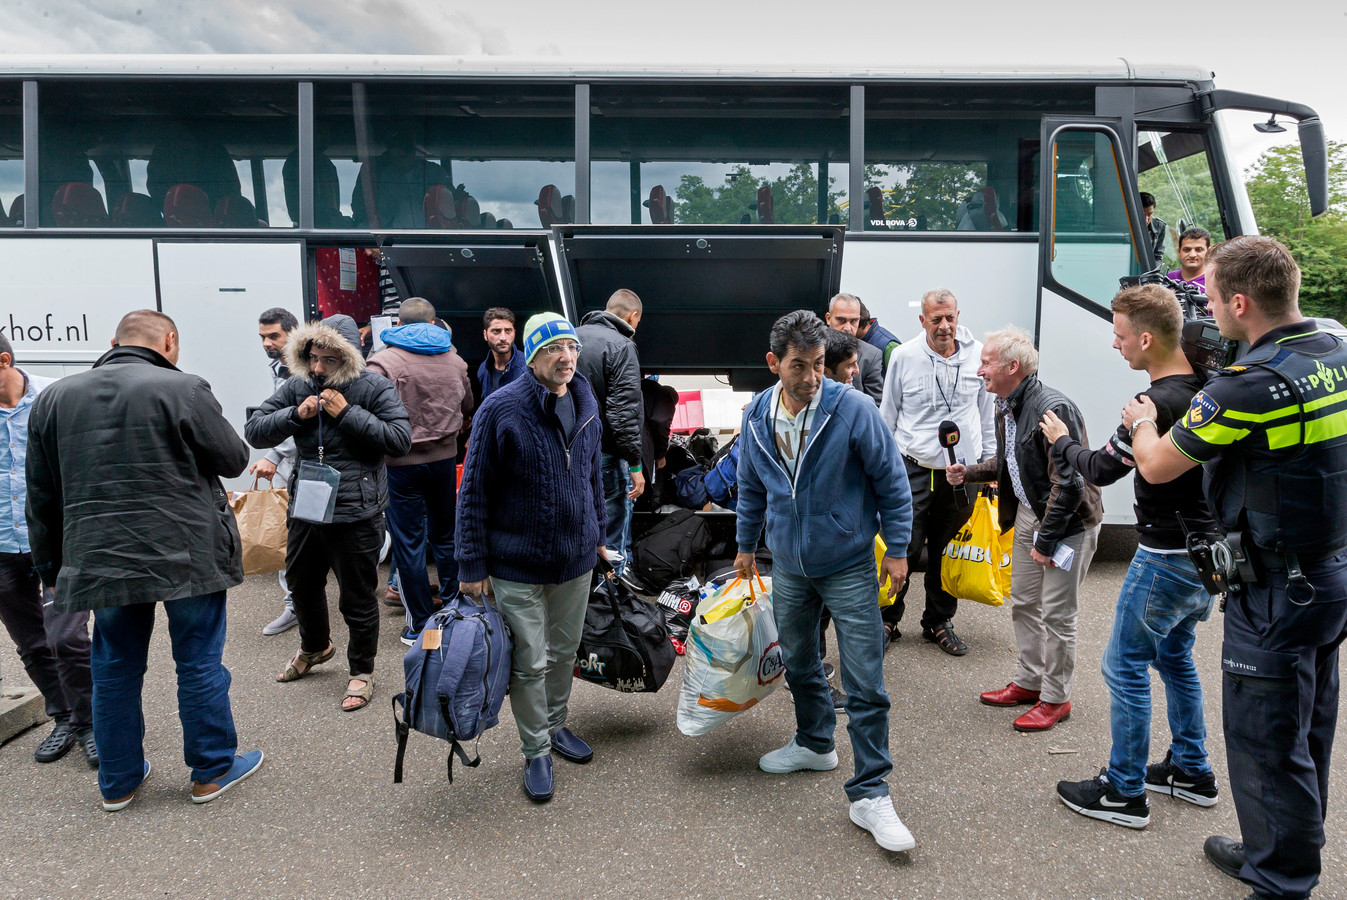 In het Autotron in Rosmalen werden vijf jaar geleden zo'n 500 vluchtelingen opgevangen.